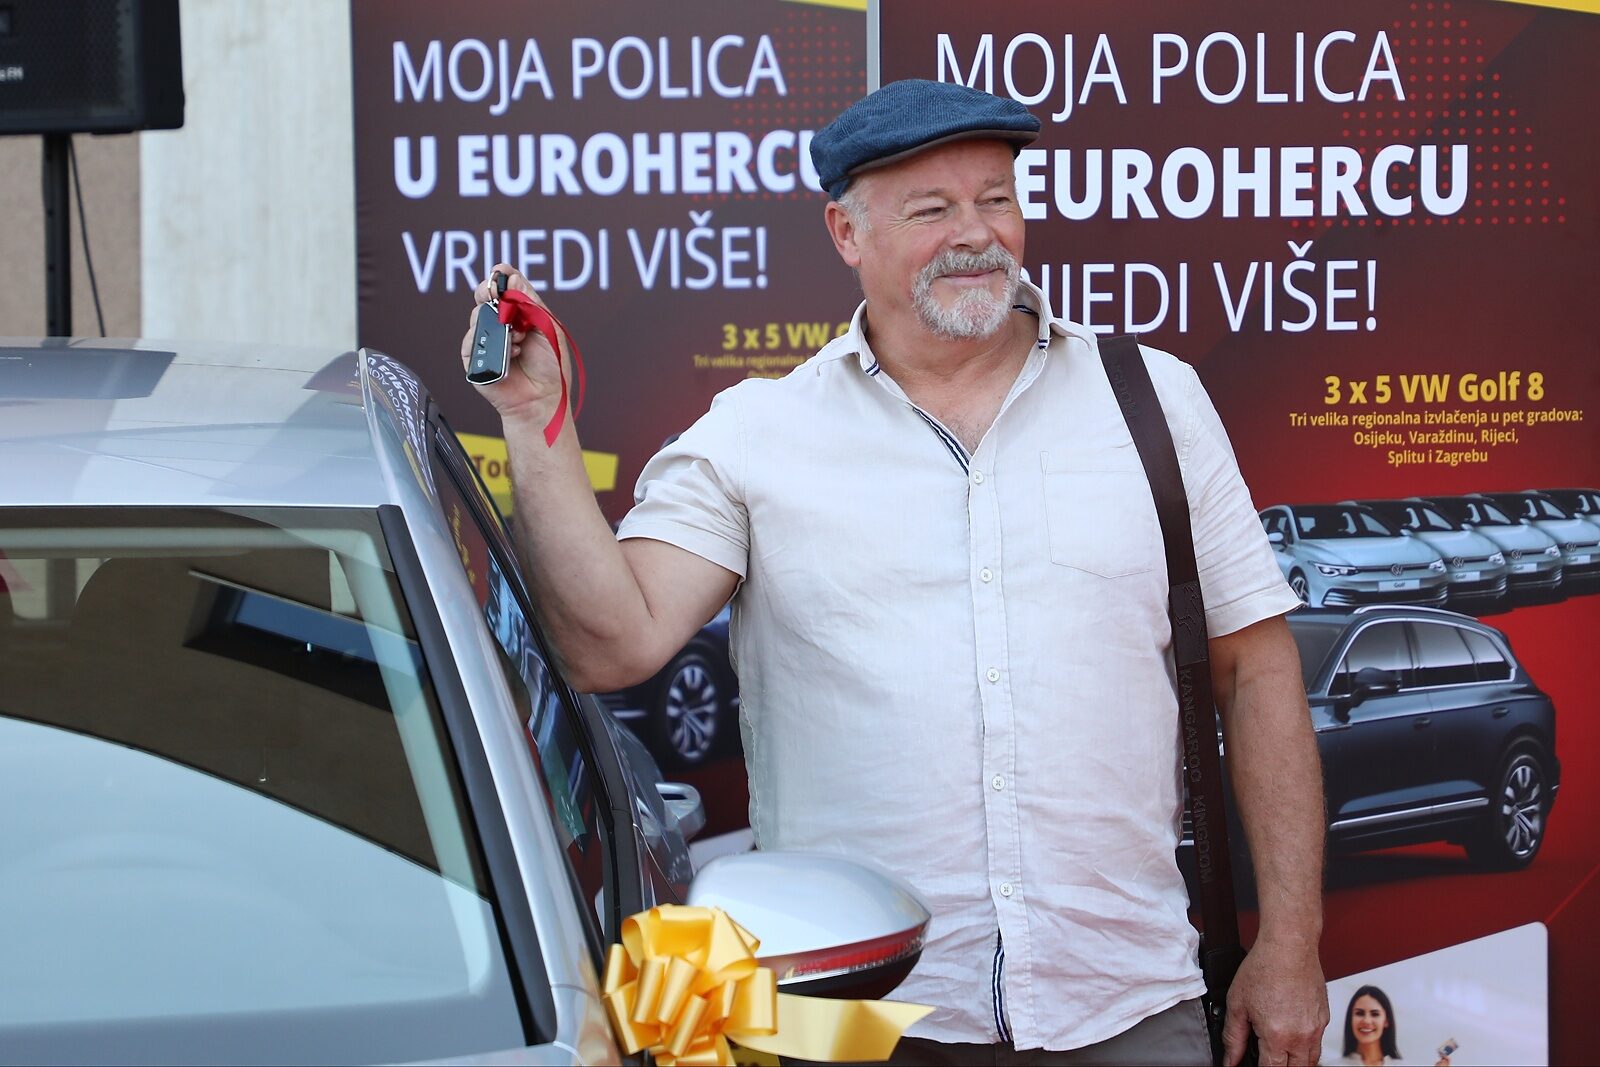 Moja polica u Eurohercu/Adriaticu vrijedi vie